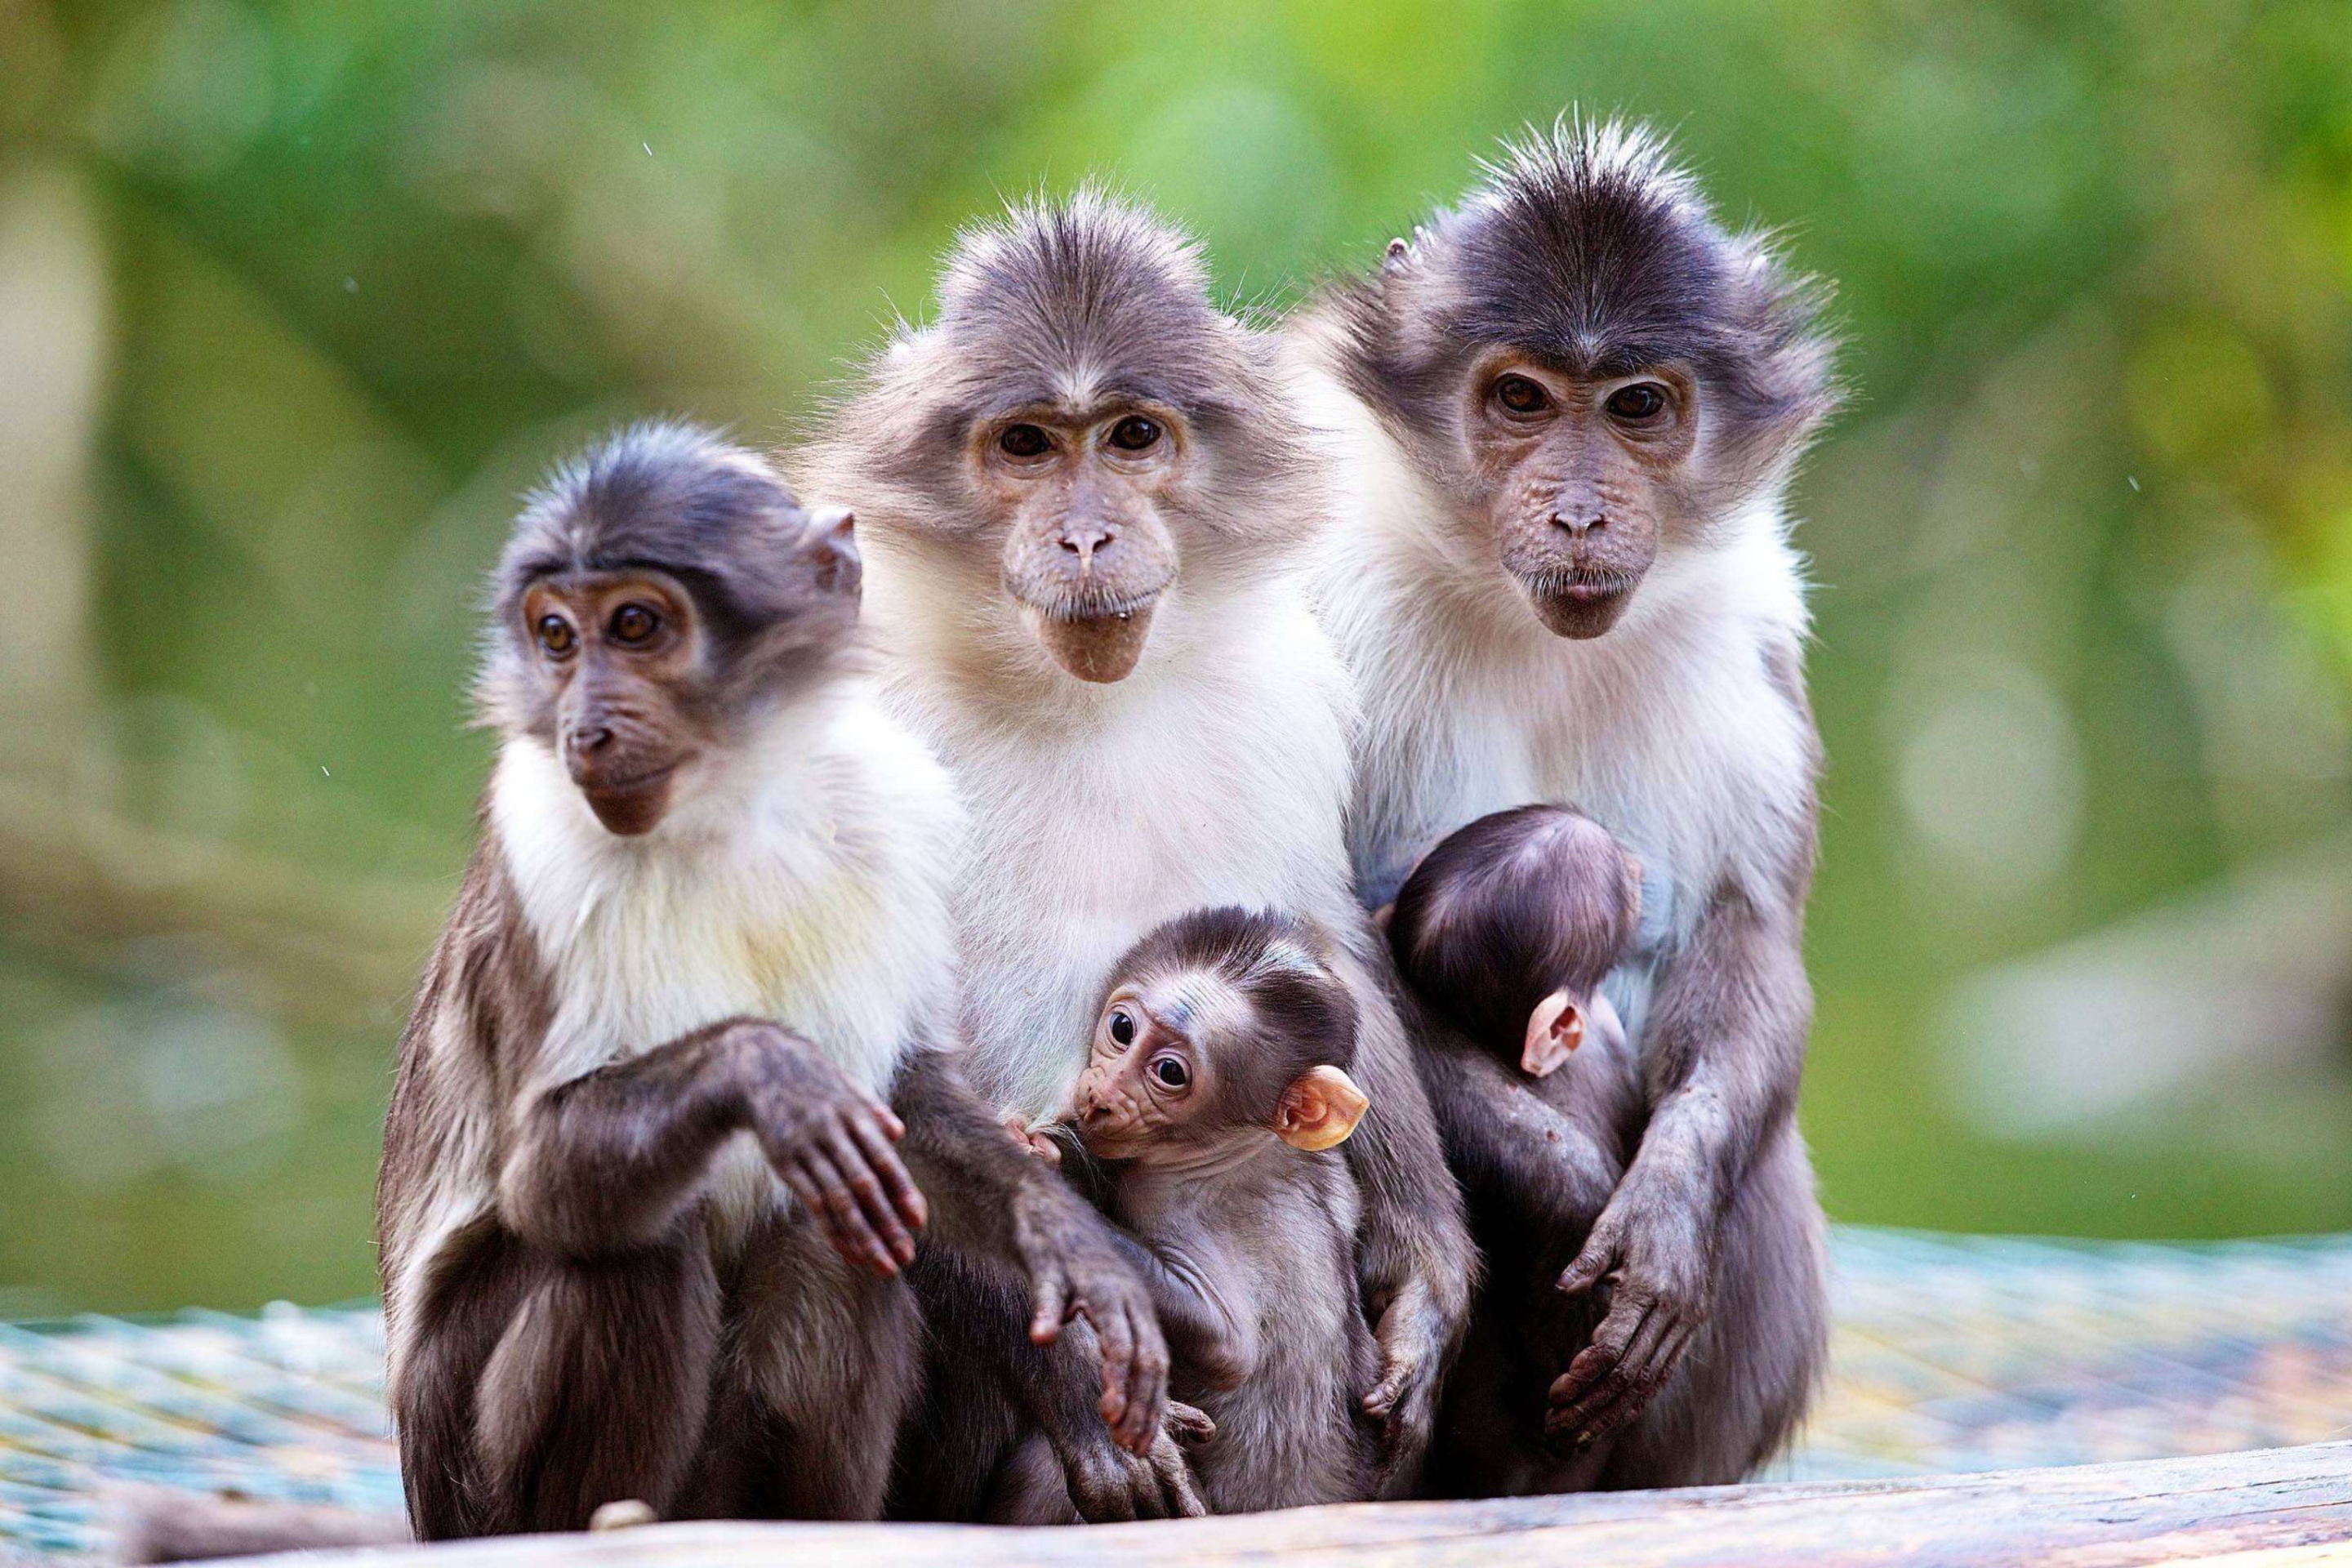 Sfondi Funny Monkeys With Their Babies 2880x1920